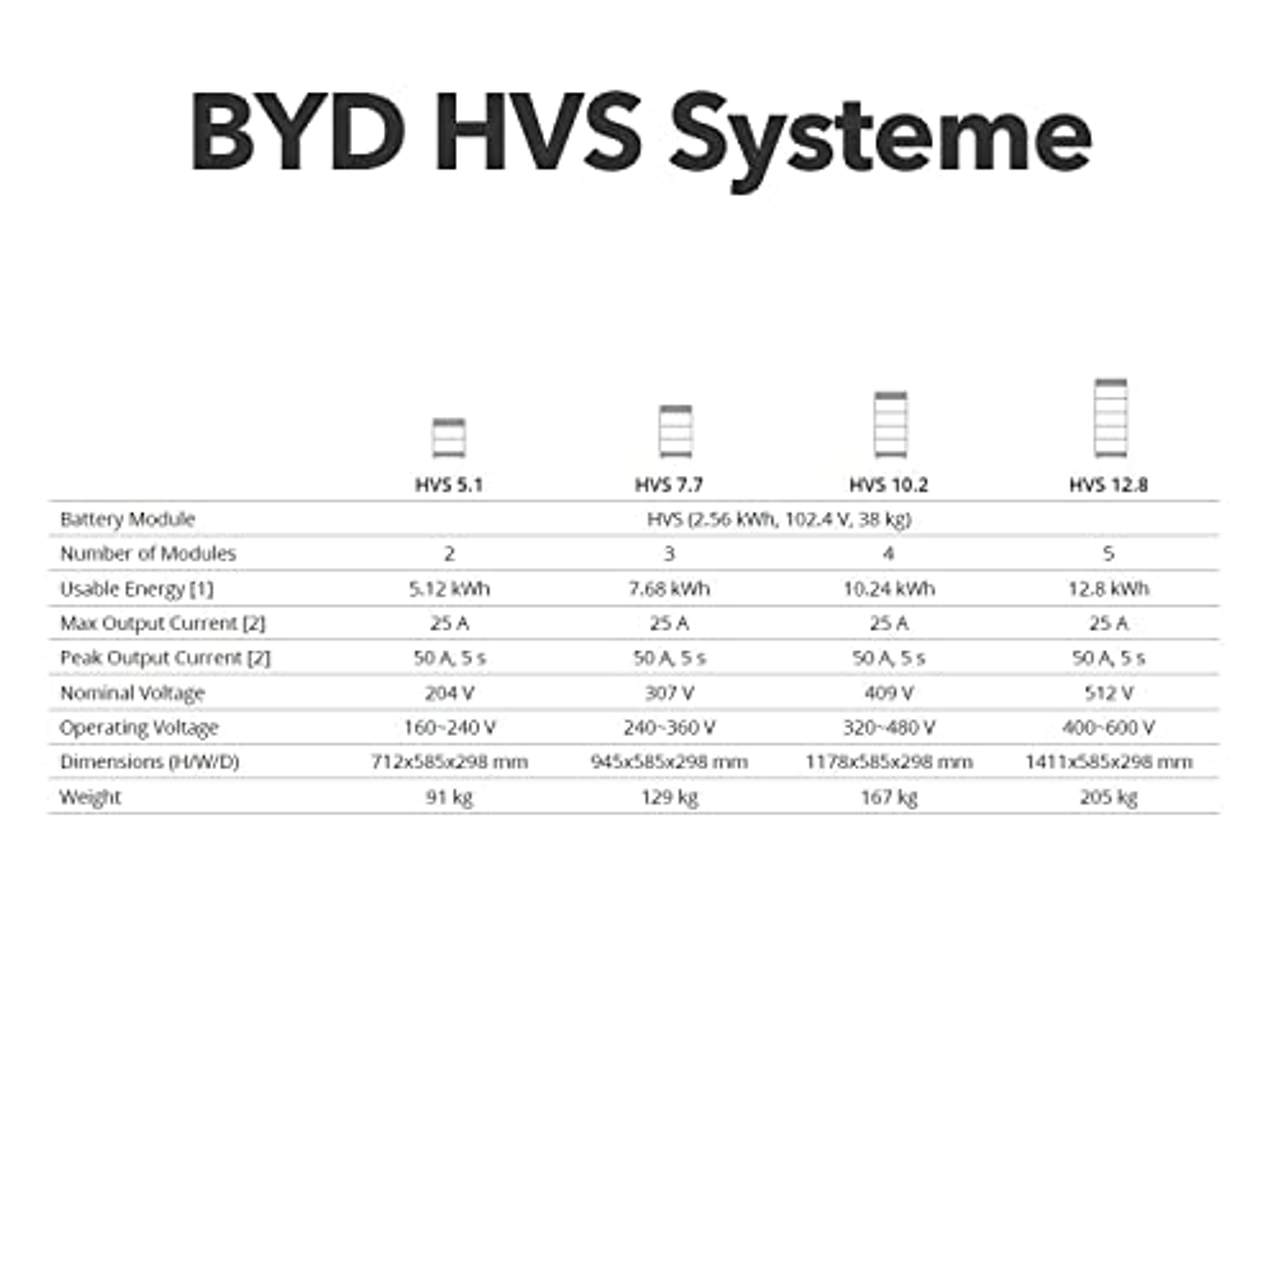 Power Werk BYD HVS Speicher 10.2 kWh